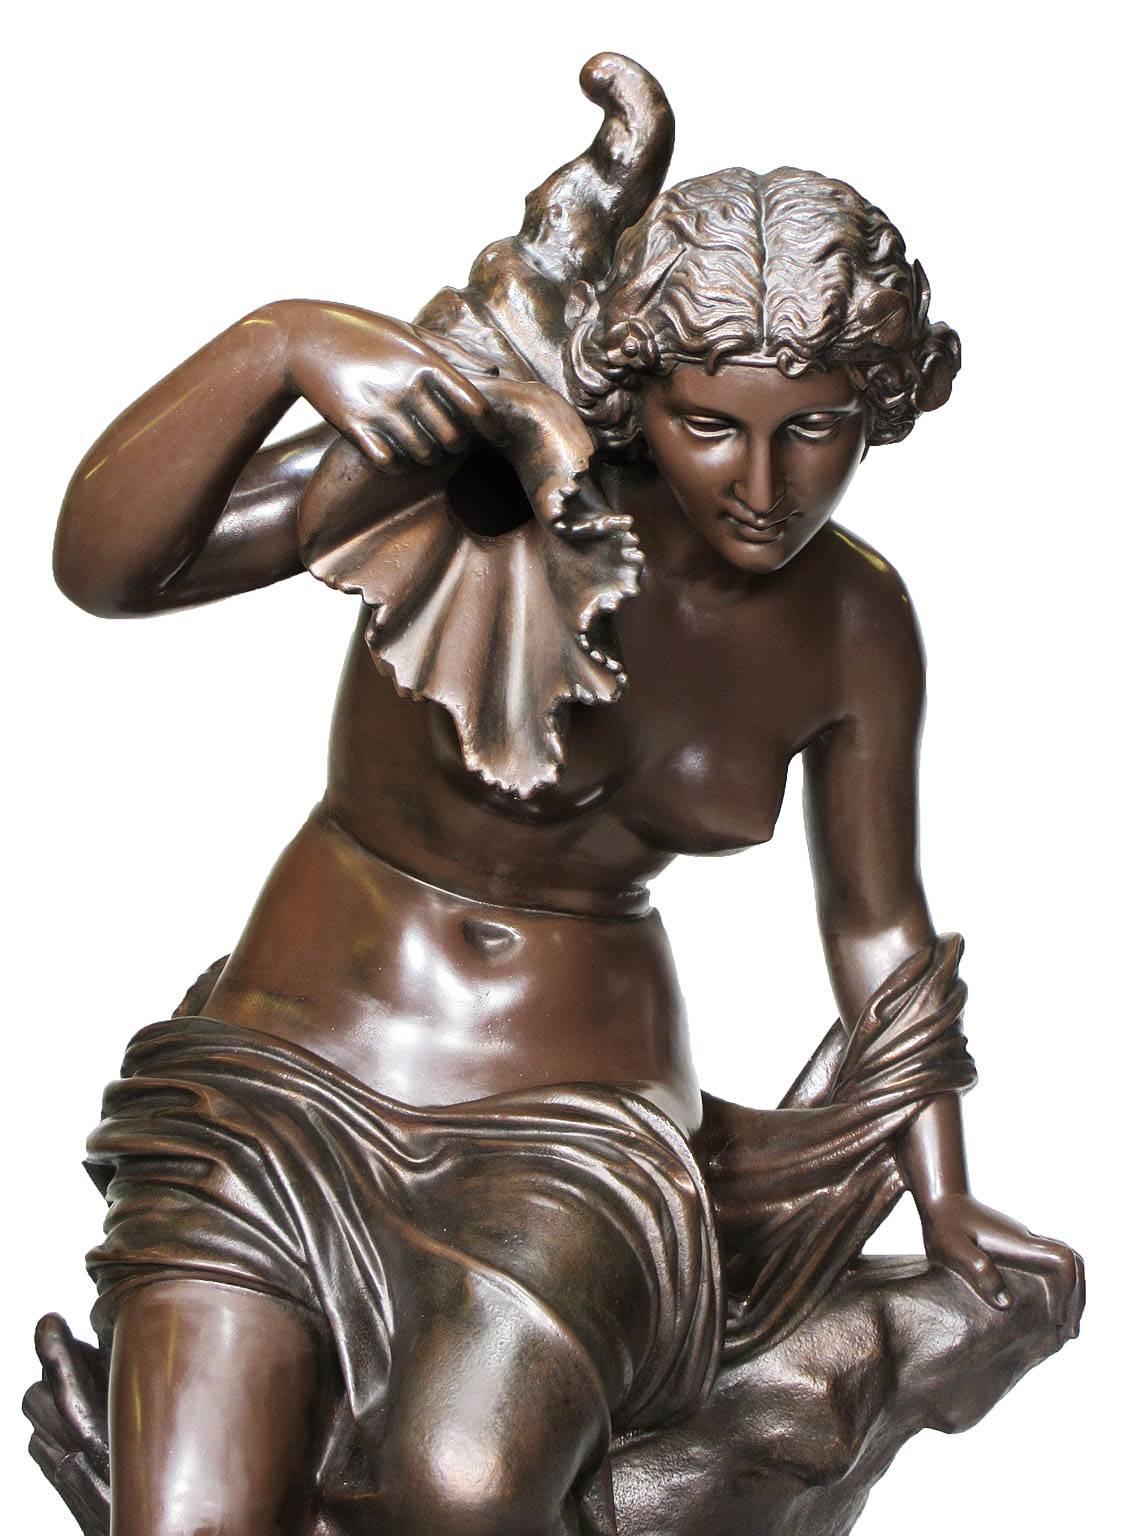 Feine und große französische Brunnenfigur aus Gusseisen aus dem 19. Jahrhundert in Form eines nackten Mädchens, das auf einem Felsvorsprung sitzt und ein Füllhorn in der erhobenen rechten Hand hält, von J.J. Ducel. Gegossen und signiert 